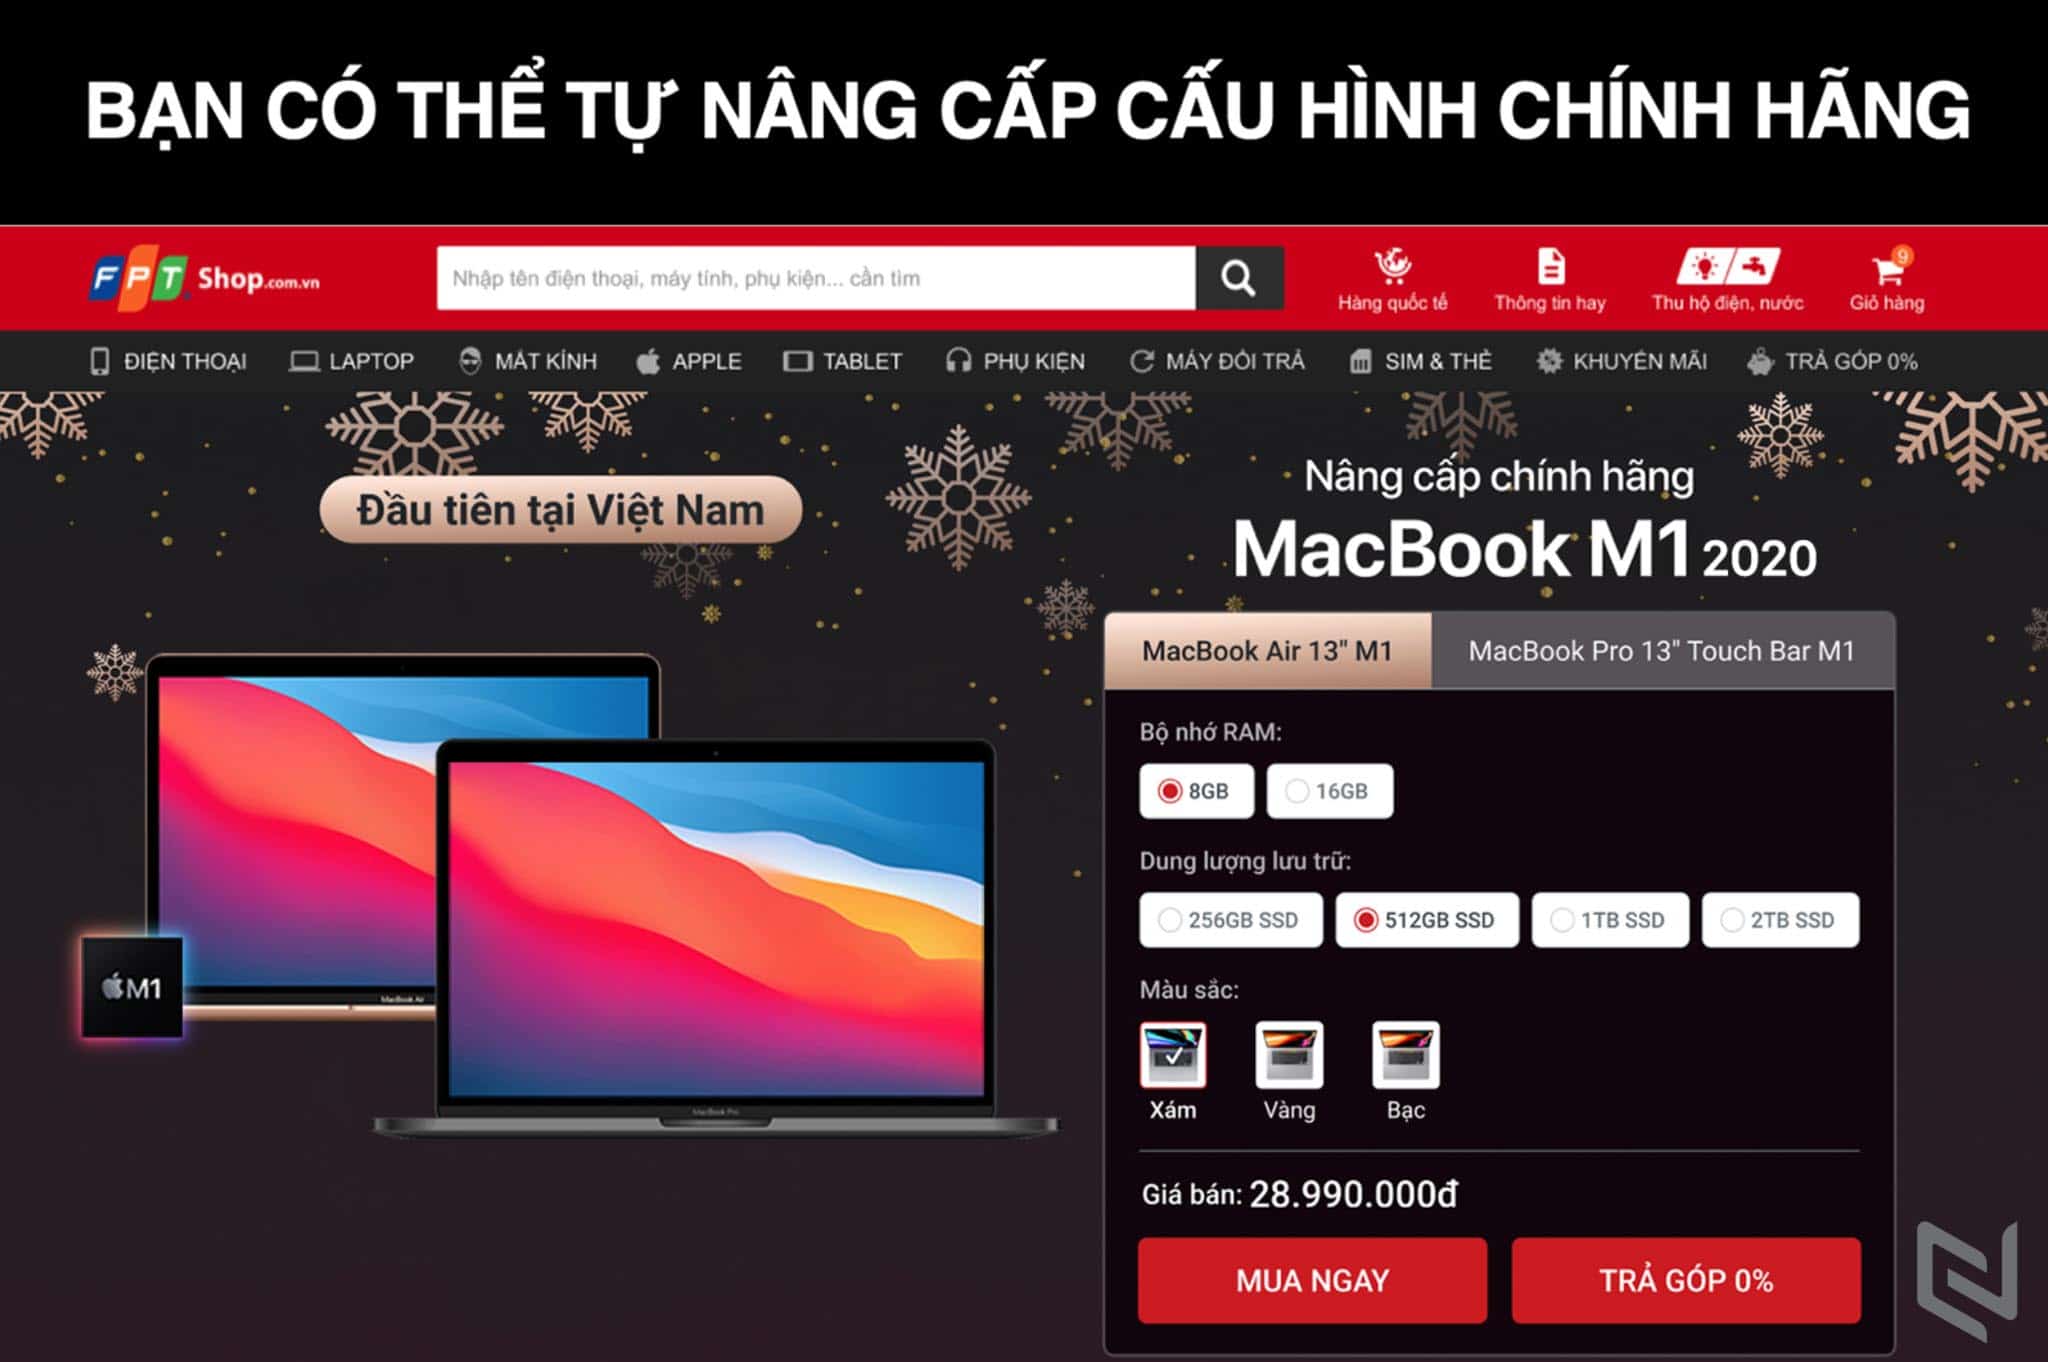 FPT Shop là chuỗi cửa hàng chính hãng đầu tiên mở bán MacBook M1 2020 tại Việt Nam